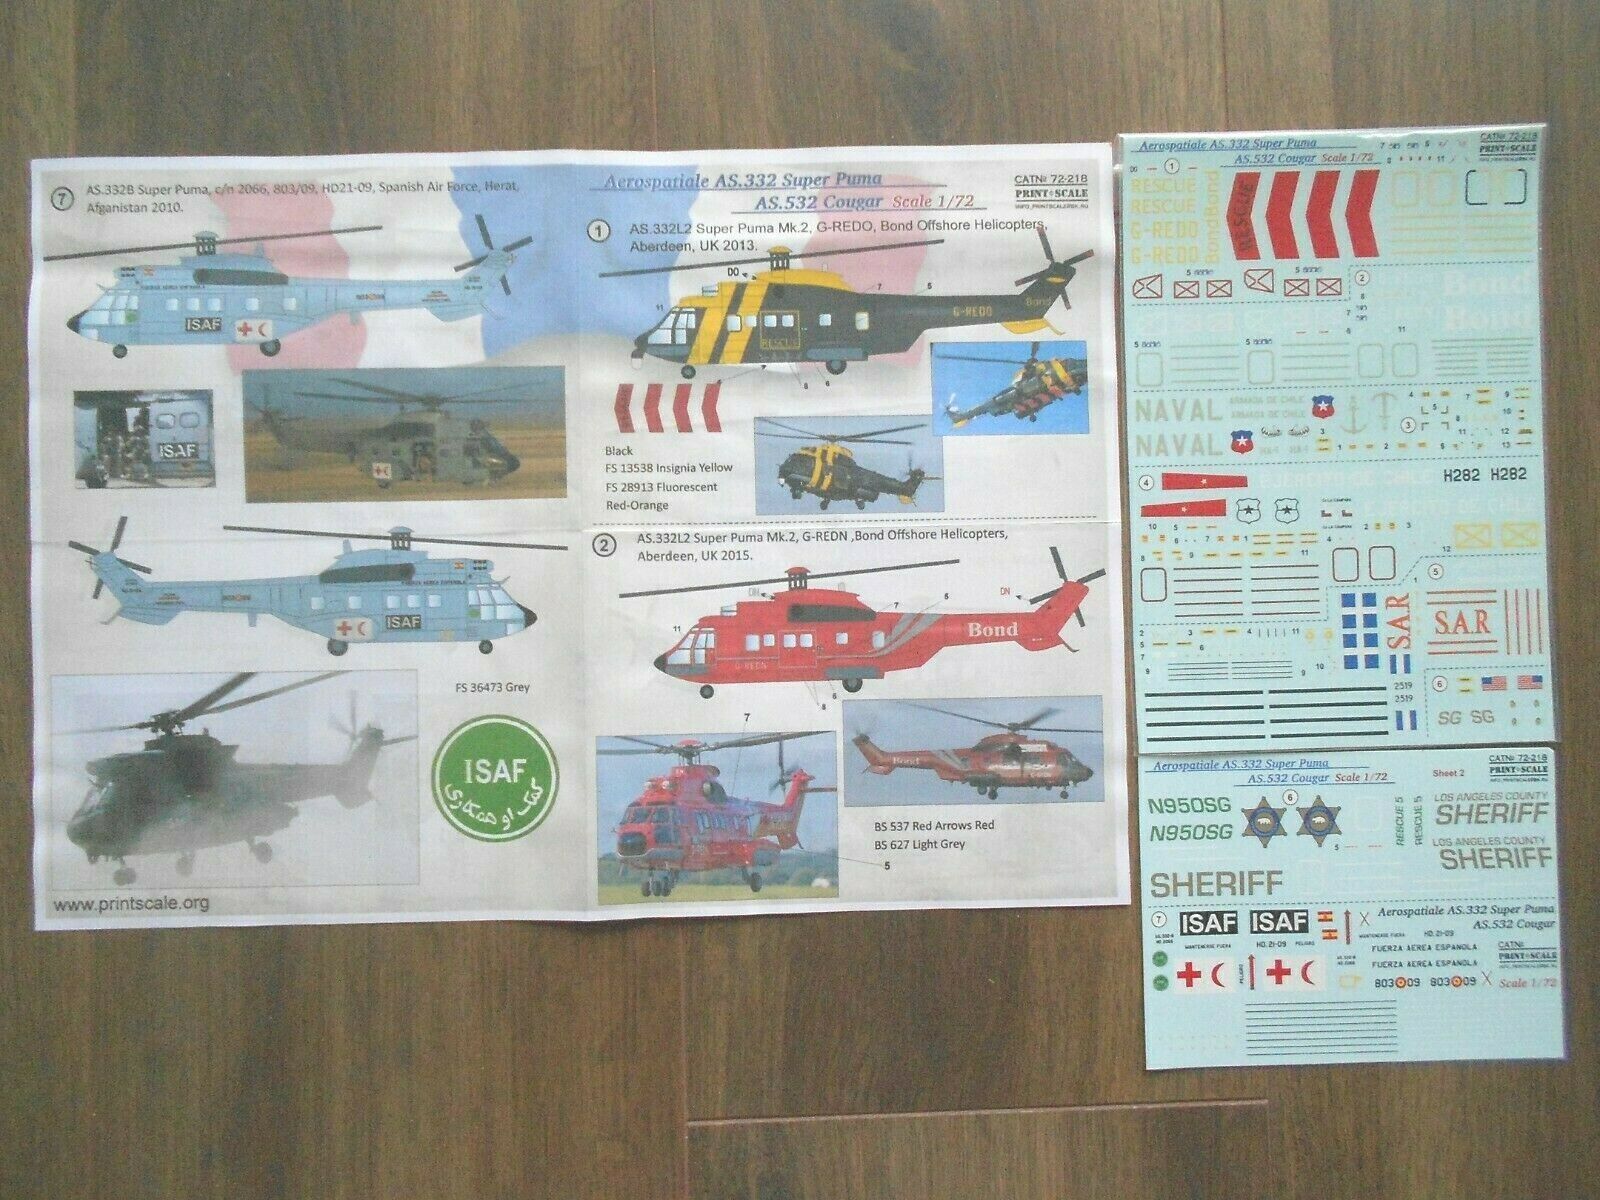 Aerospatiale N 262 Wallpapers